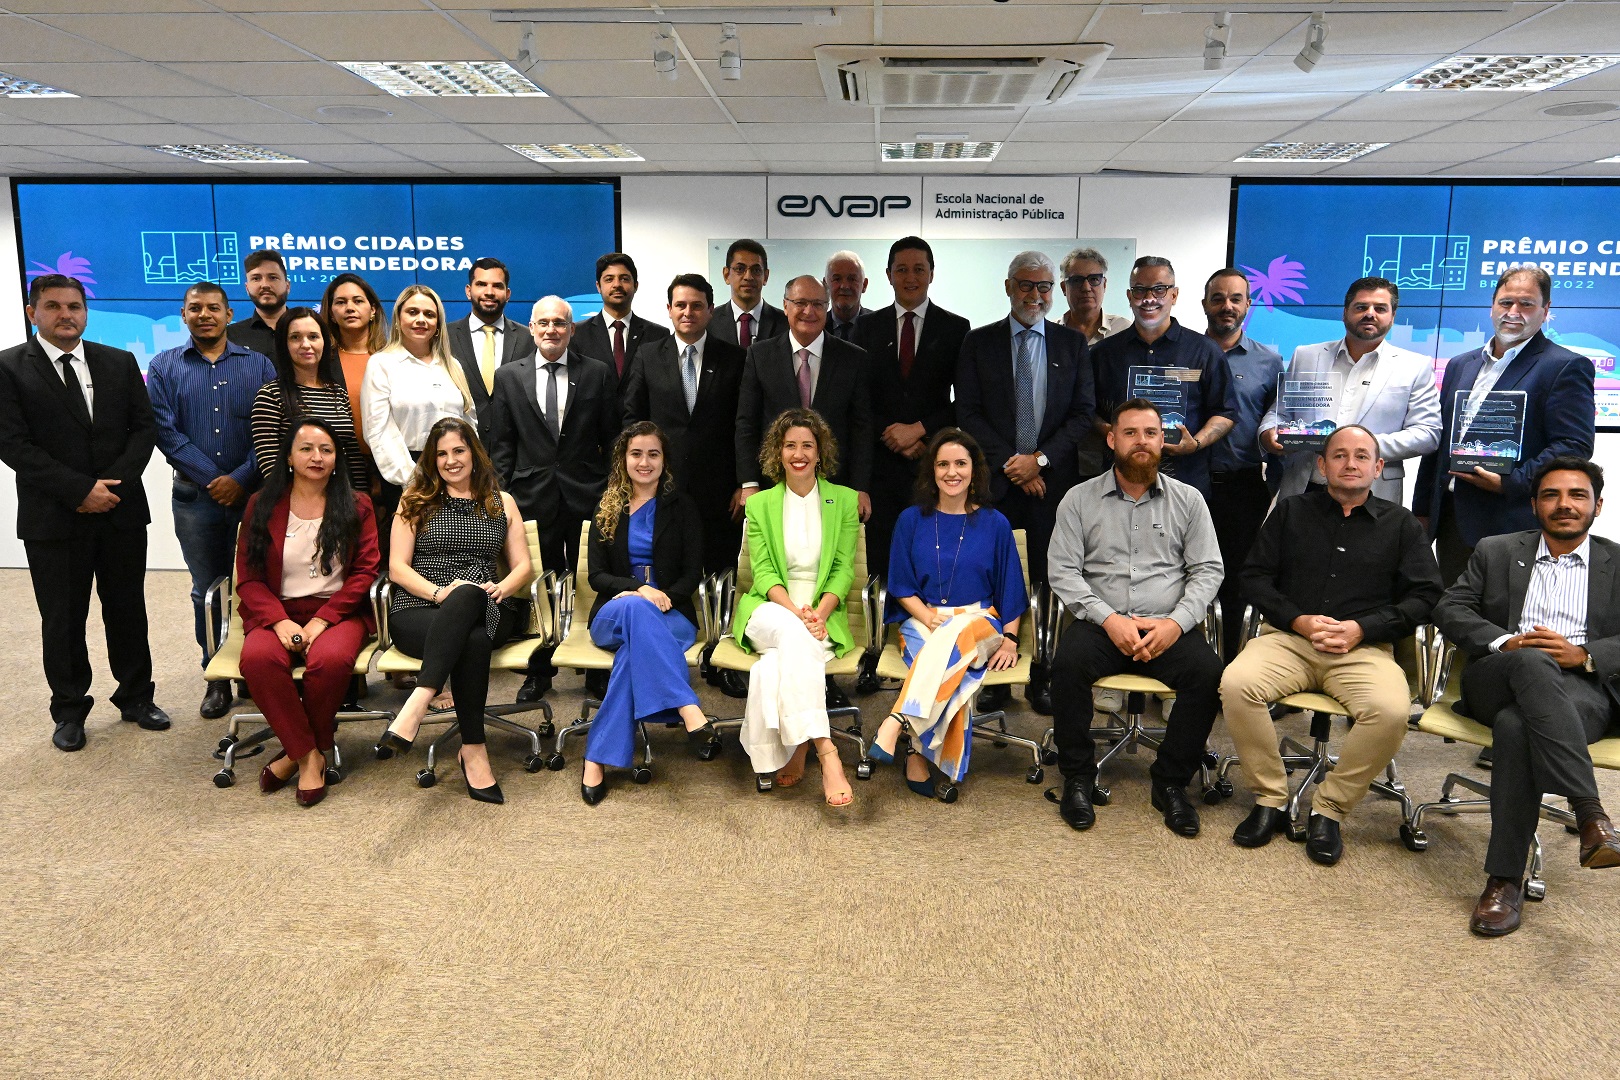 Indaial vence Prêmio Nacional com o projeto “Cidade Empreendedora – Criando oportunidades”